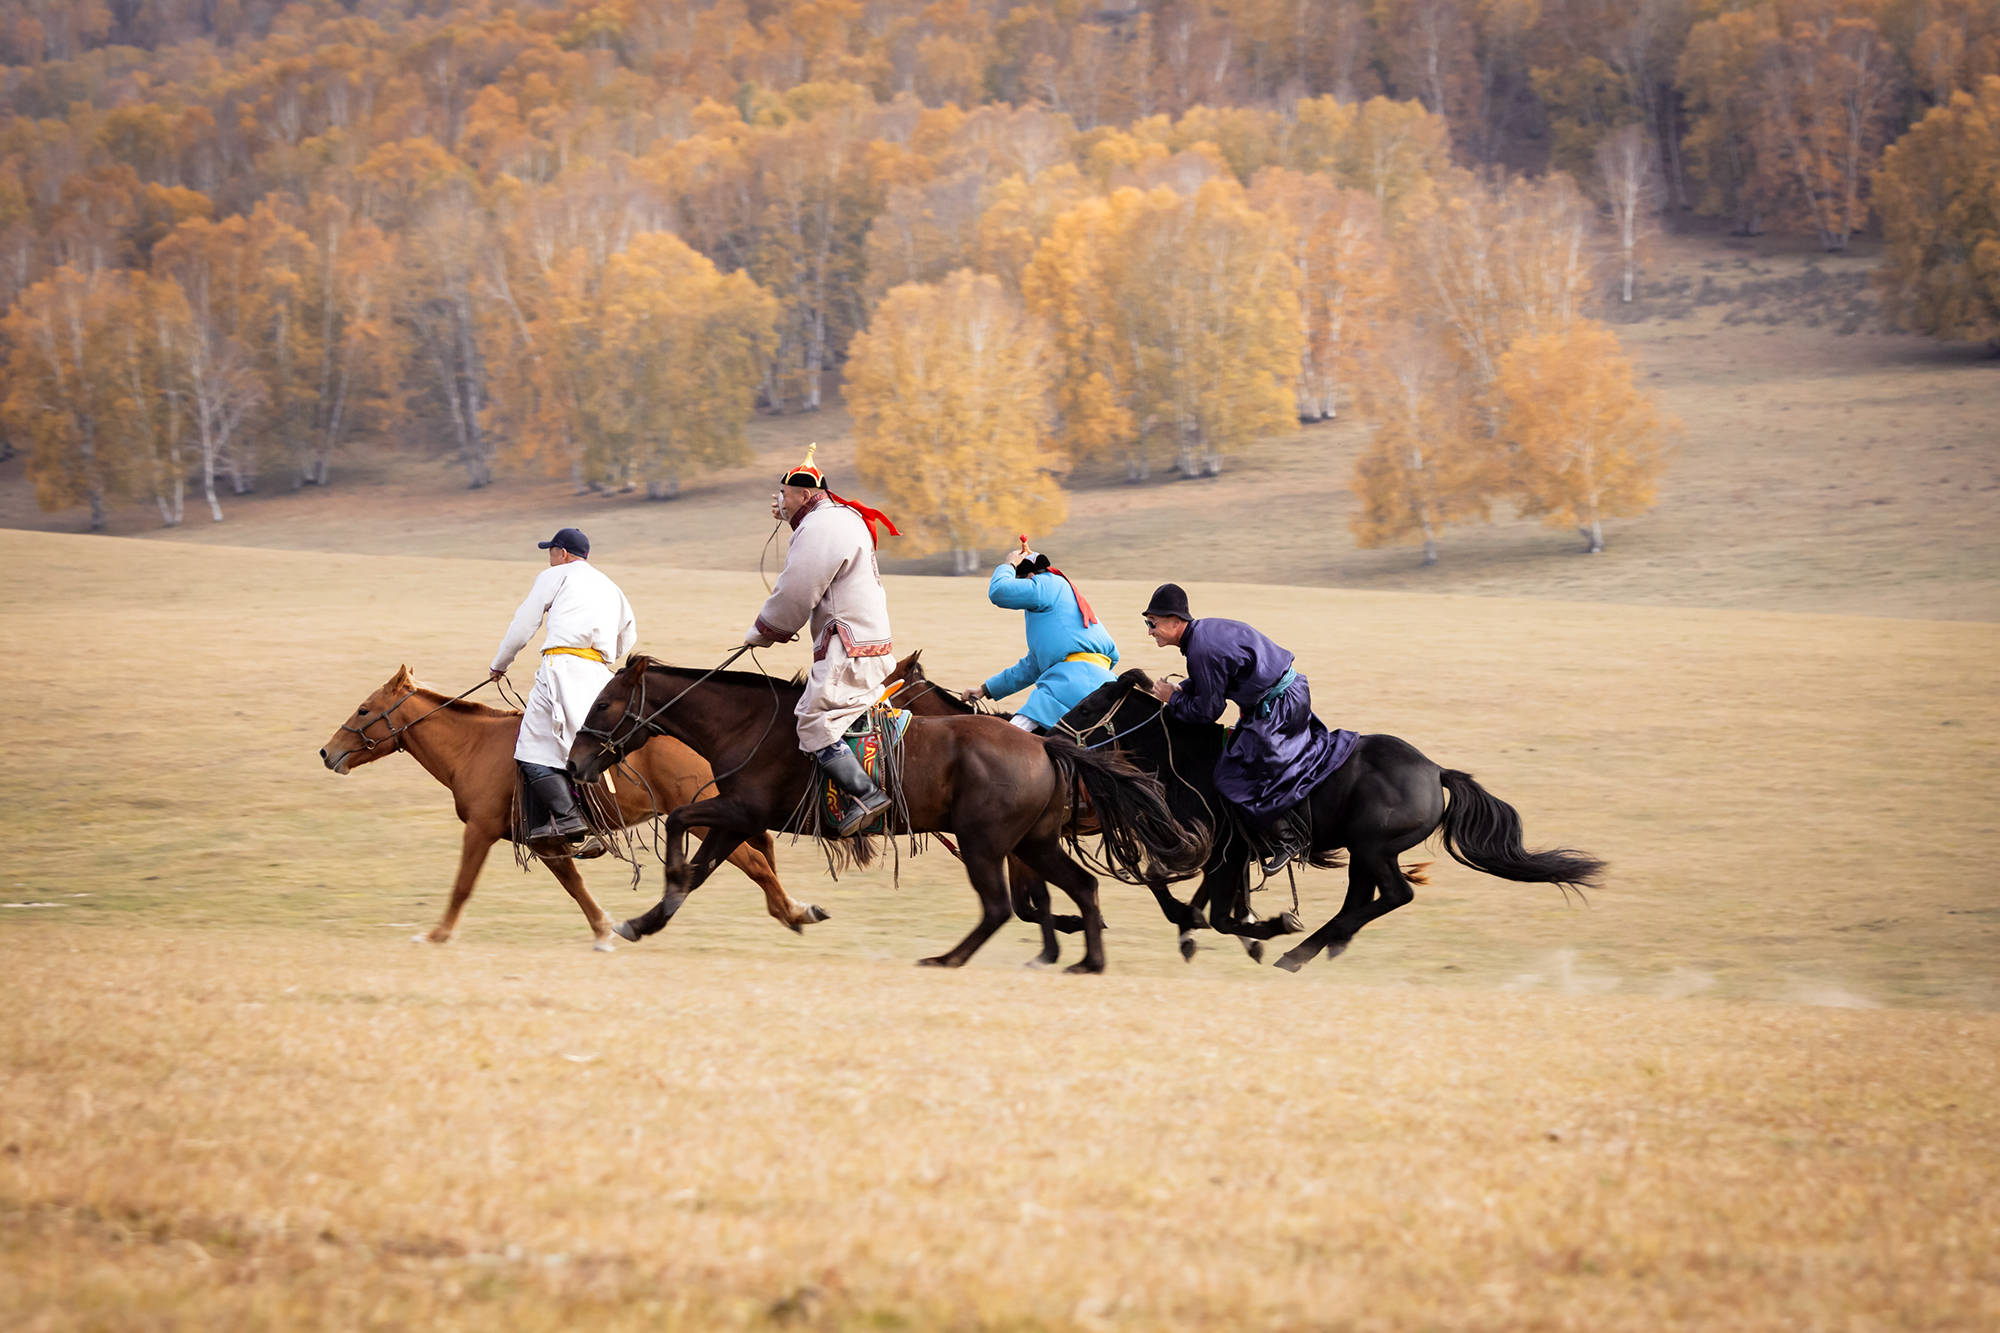 赛马是蒙古民族优良传统,这是骑手进行赛马活动